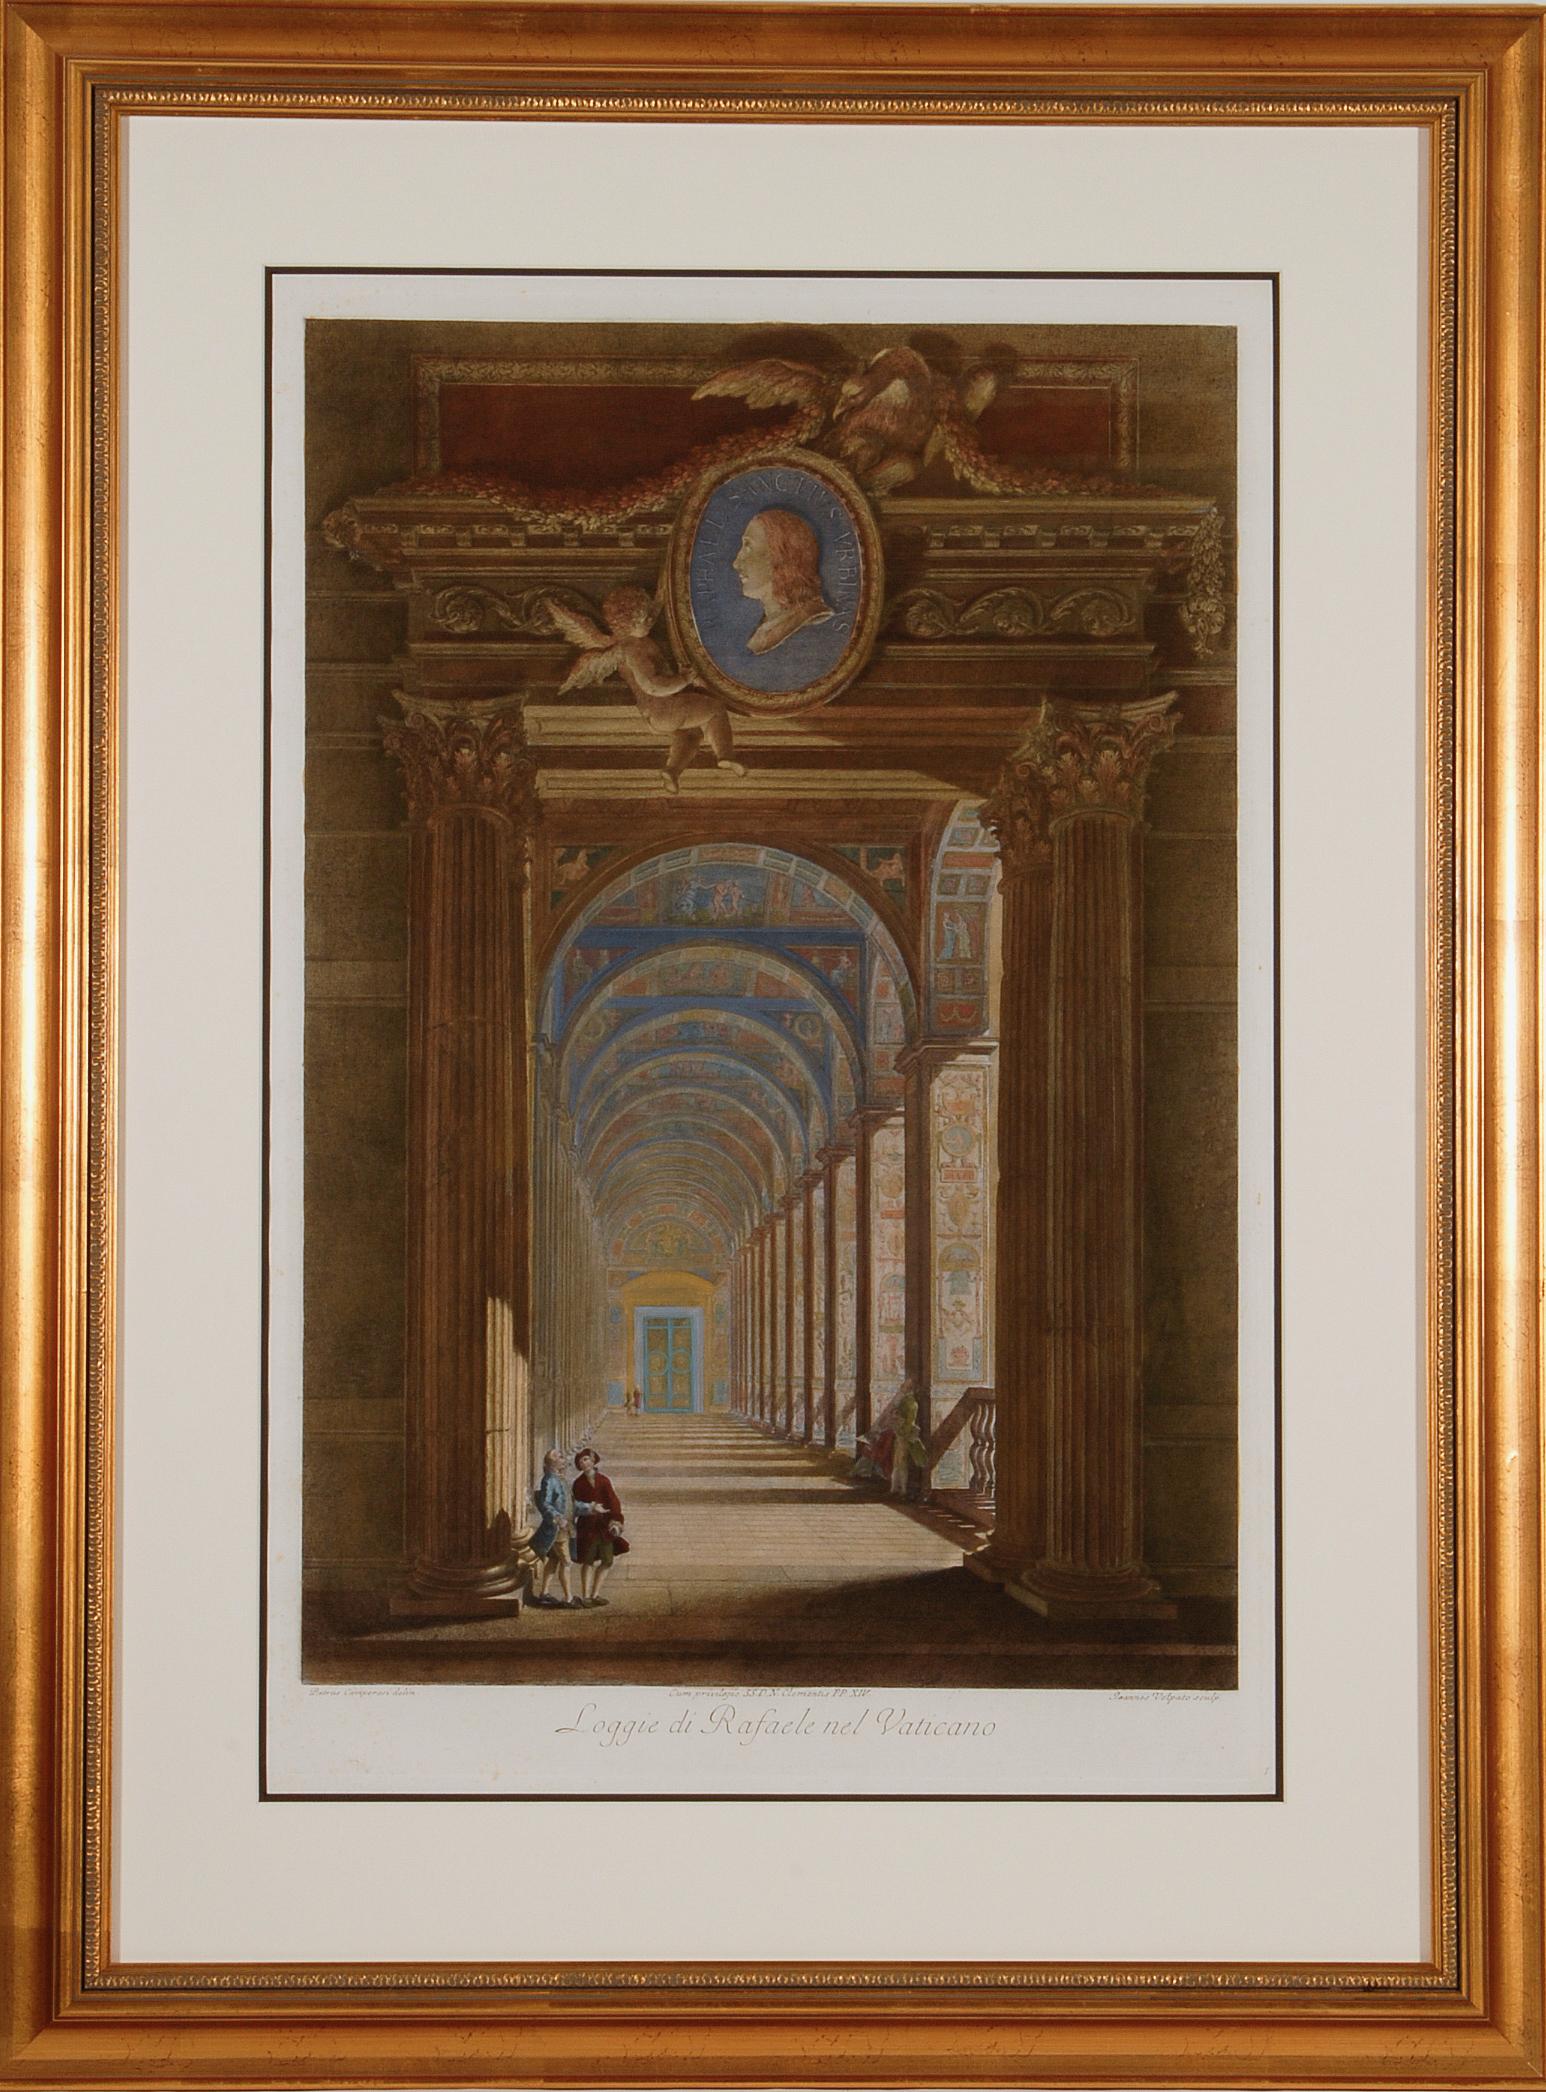 Giovanni Volpato Interior Print -  Loggie di Rafaele nel Vaticano: 18th Century Hand-colored Engraving by Volpato